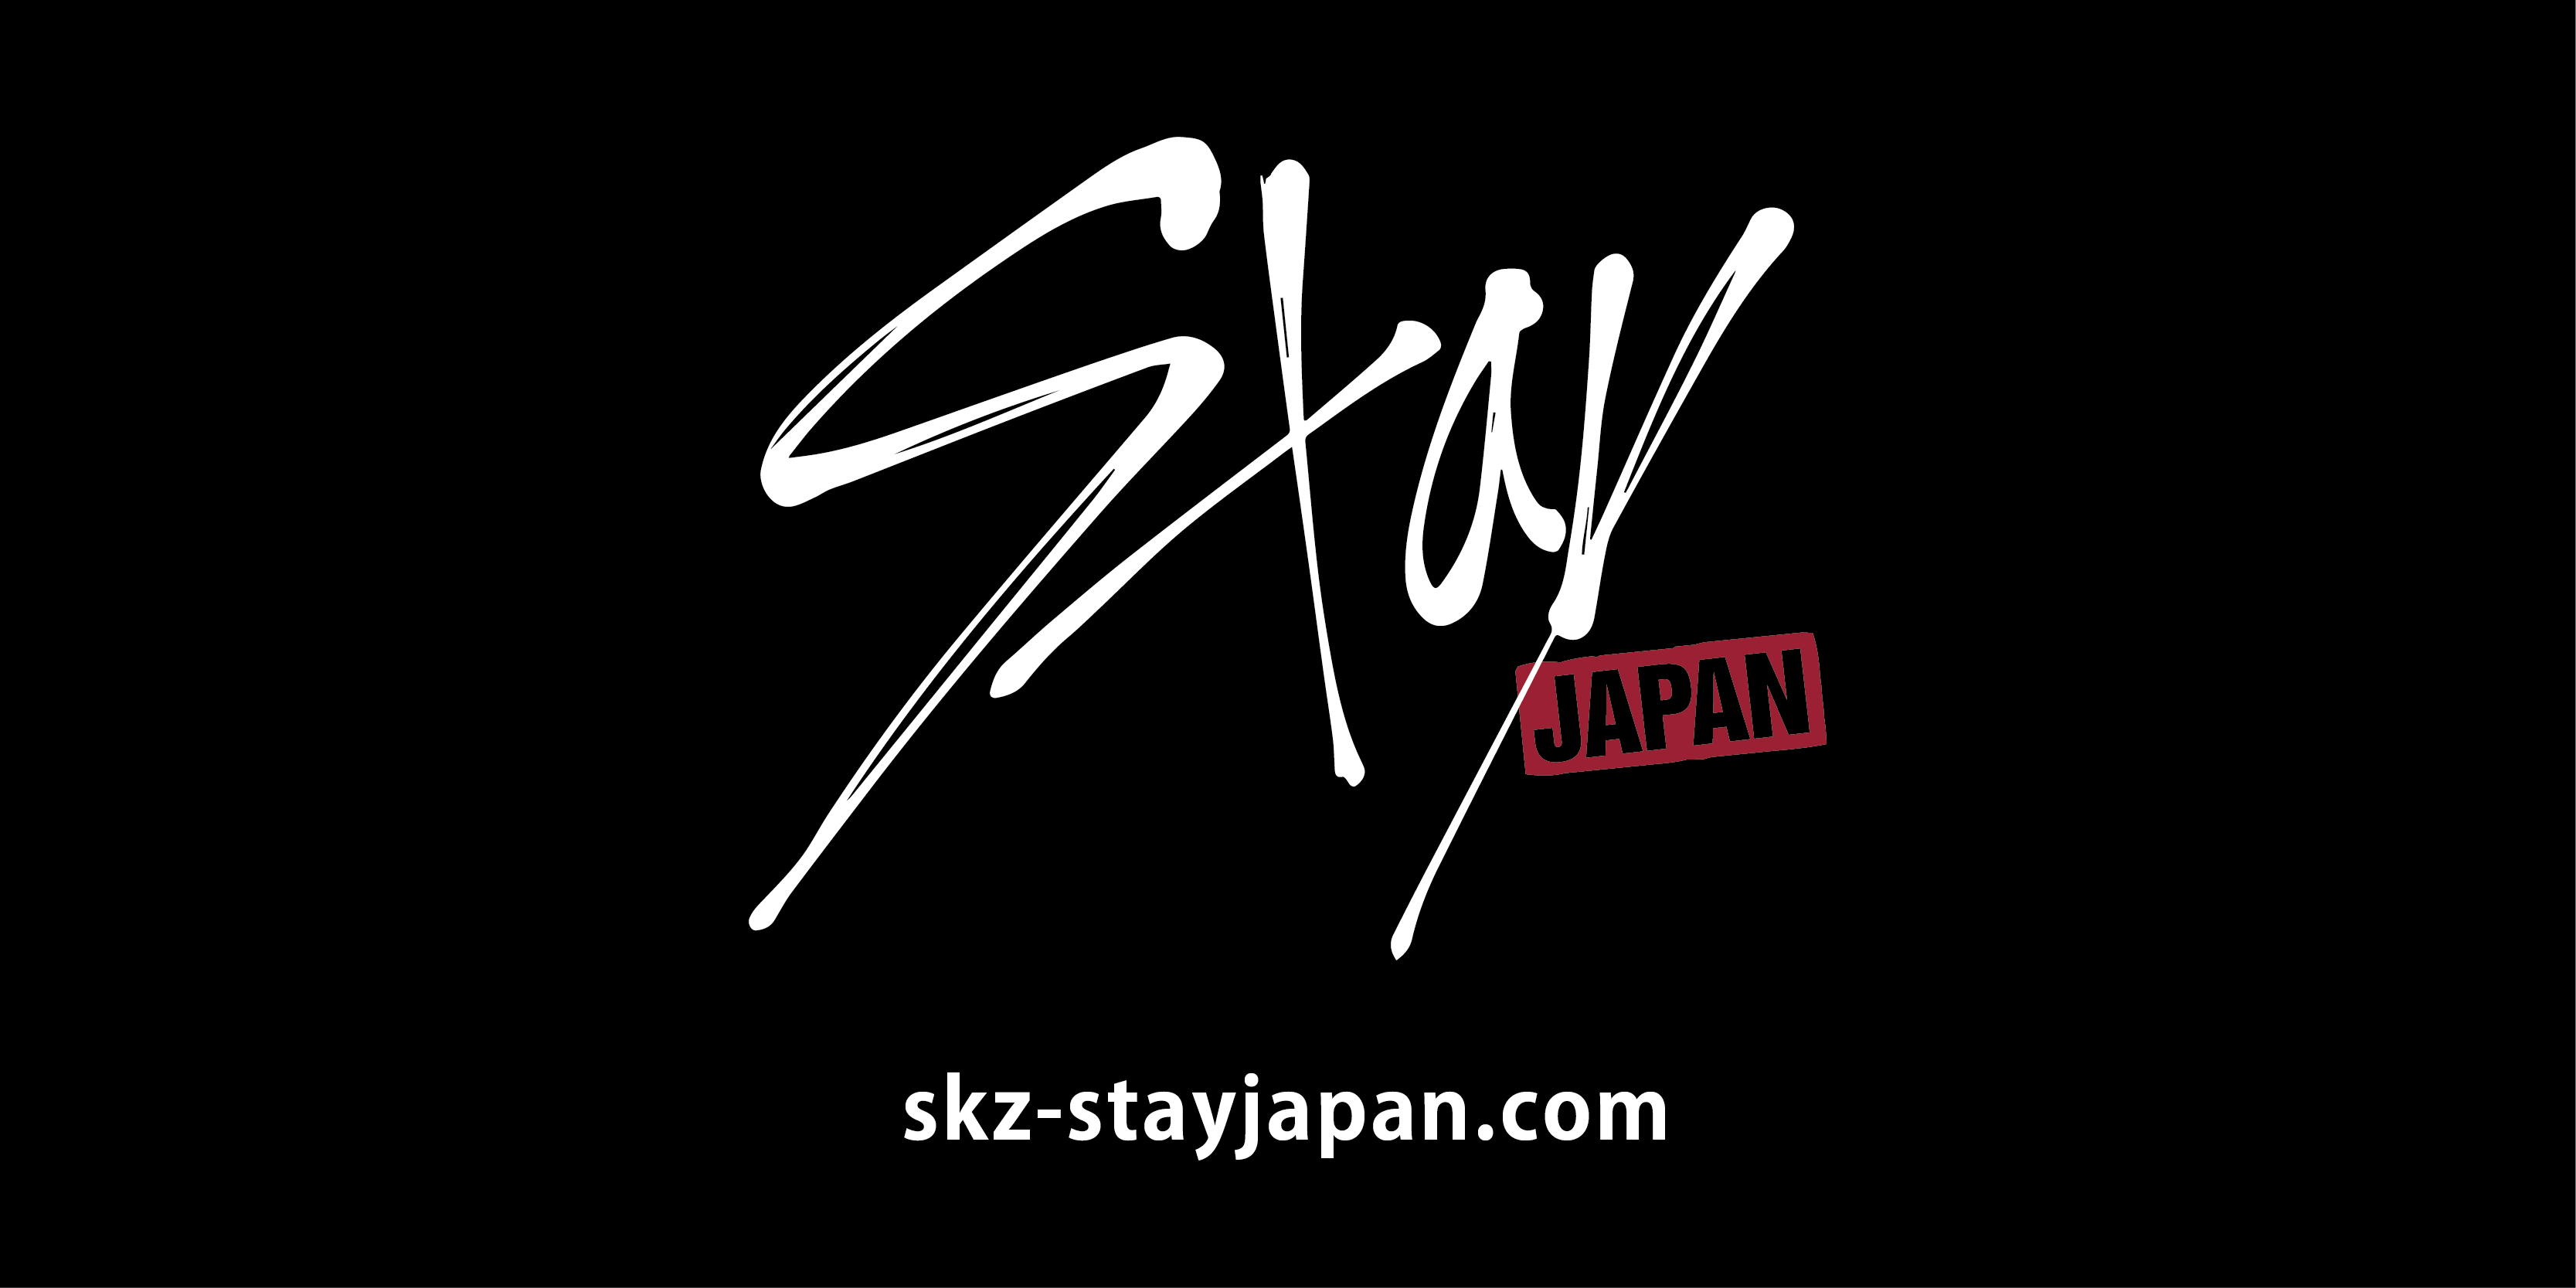 世界が注目する Stray Kids の日本公式ファンクラブが遂にオープン Stray Kids Japan Showcase 19 Hi Stay の開催も決定 ダブル会員入会で無料ご招待 株式会社jypエンターテインメント ジャパンのプレスリリース